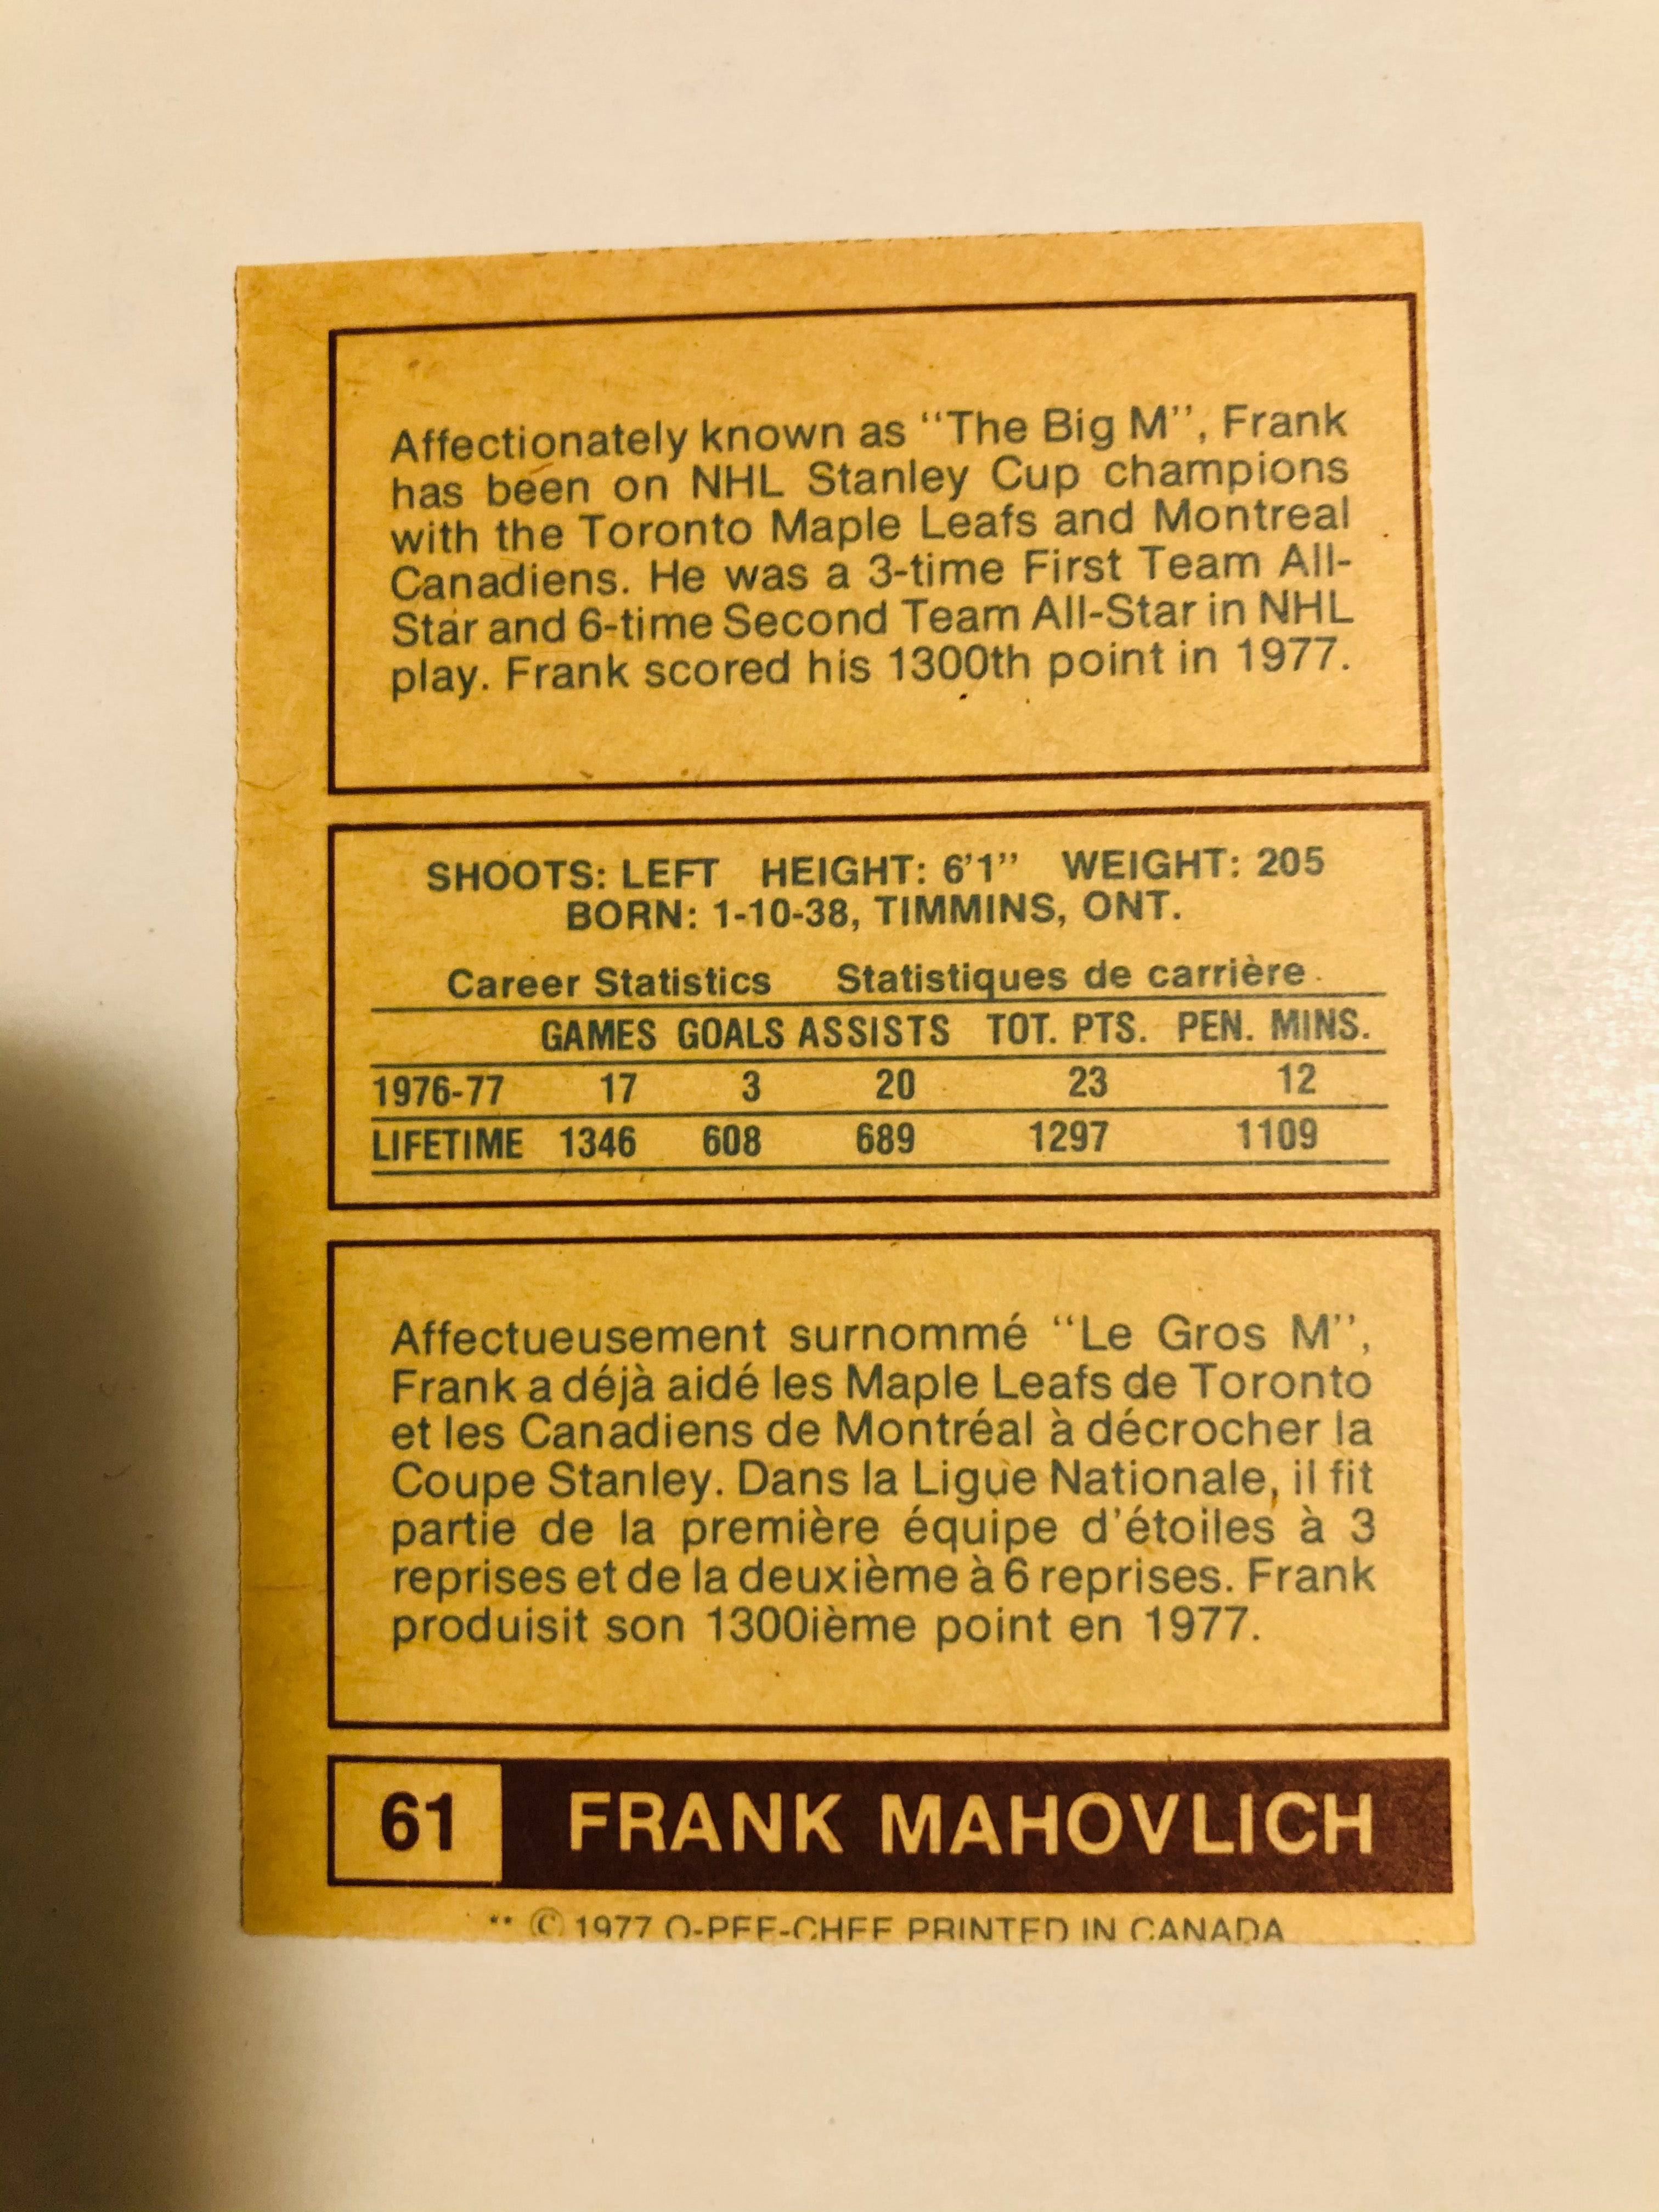 1977 WHA opc Frank Mahovlich hockey card